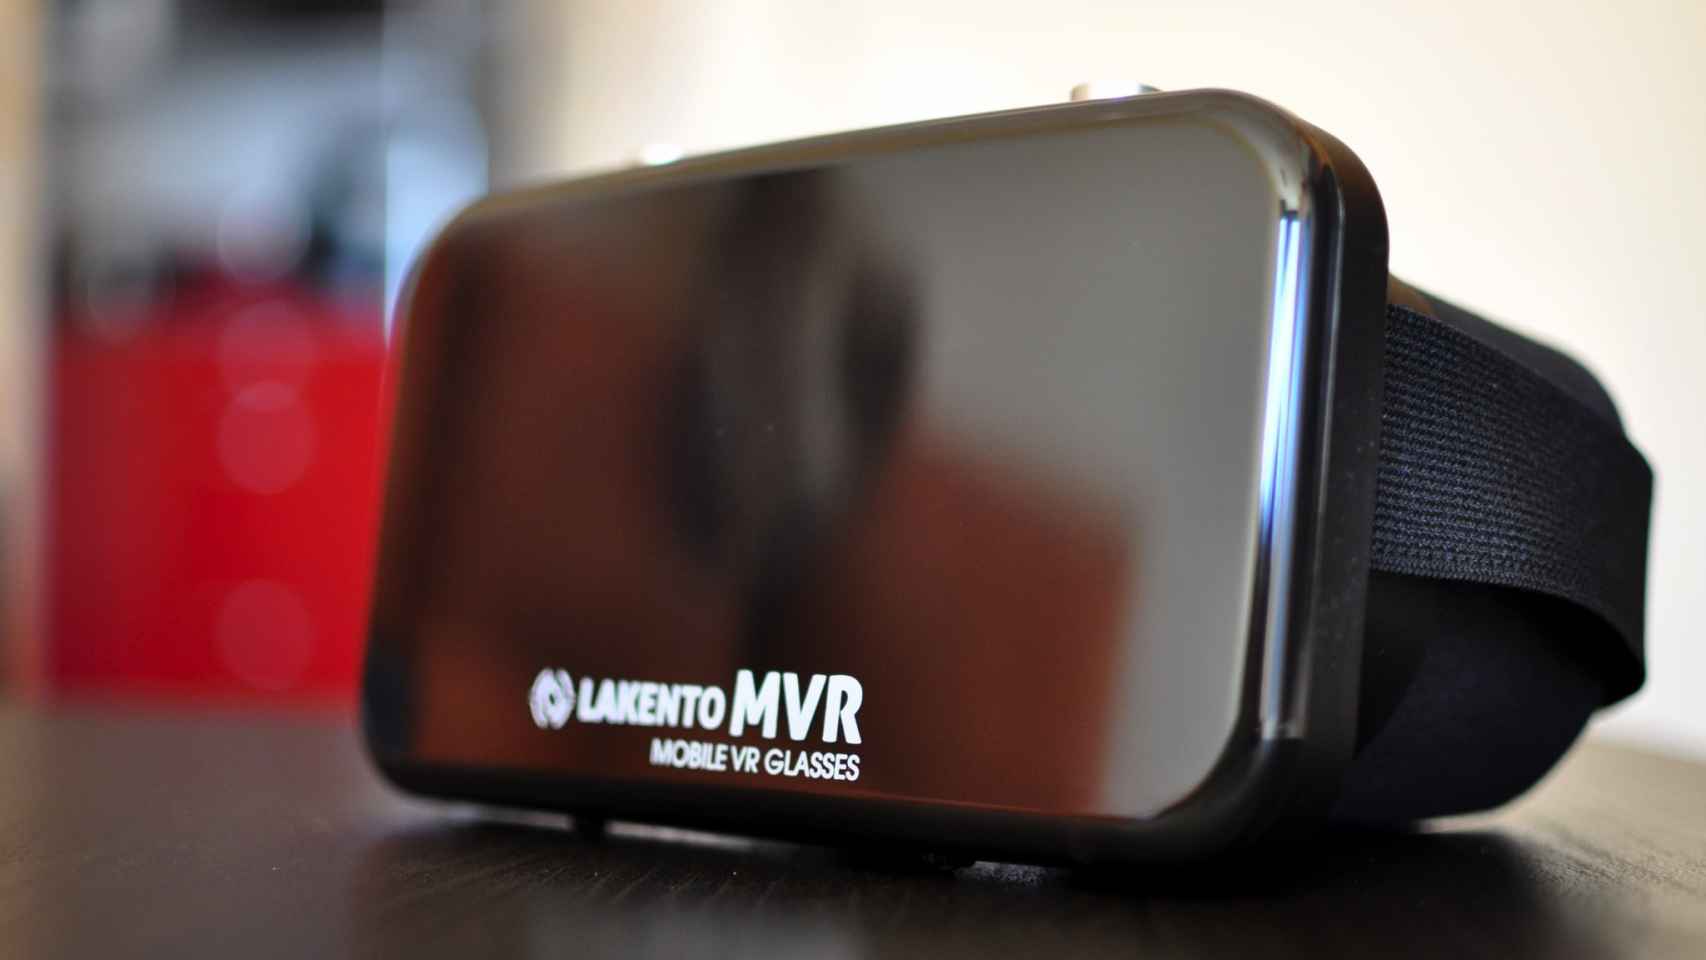 Gafas de realidad virtual Lakento MVR, análisis y experiencia de uso